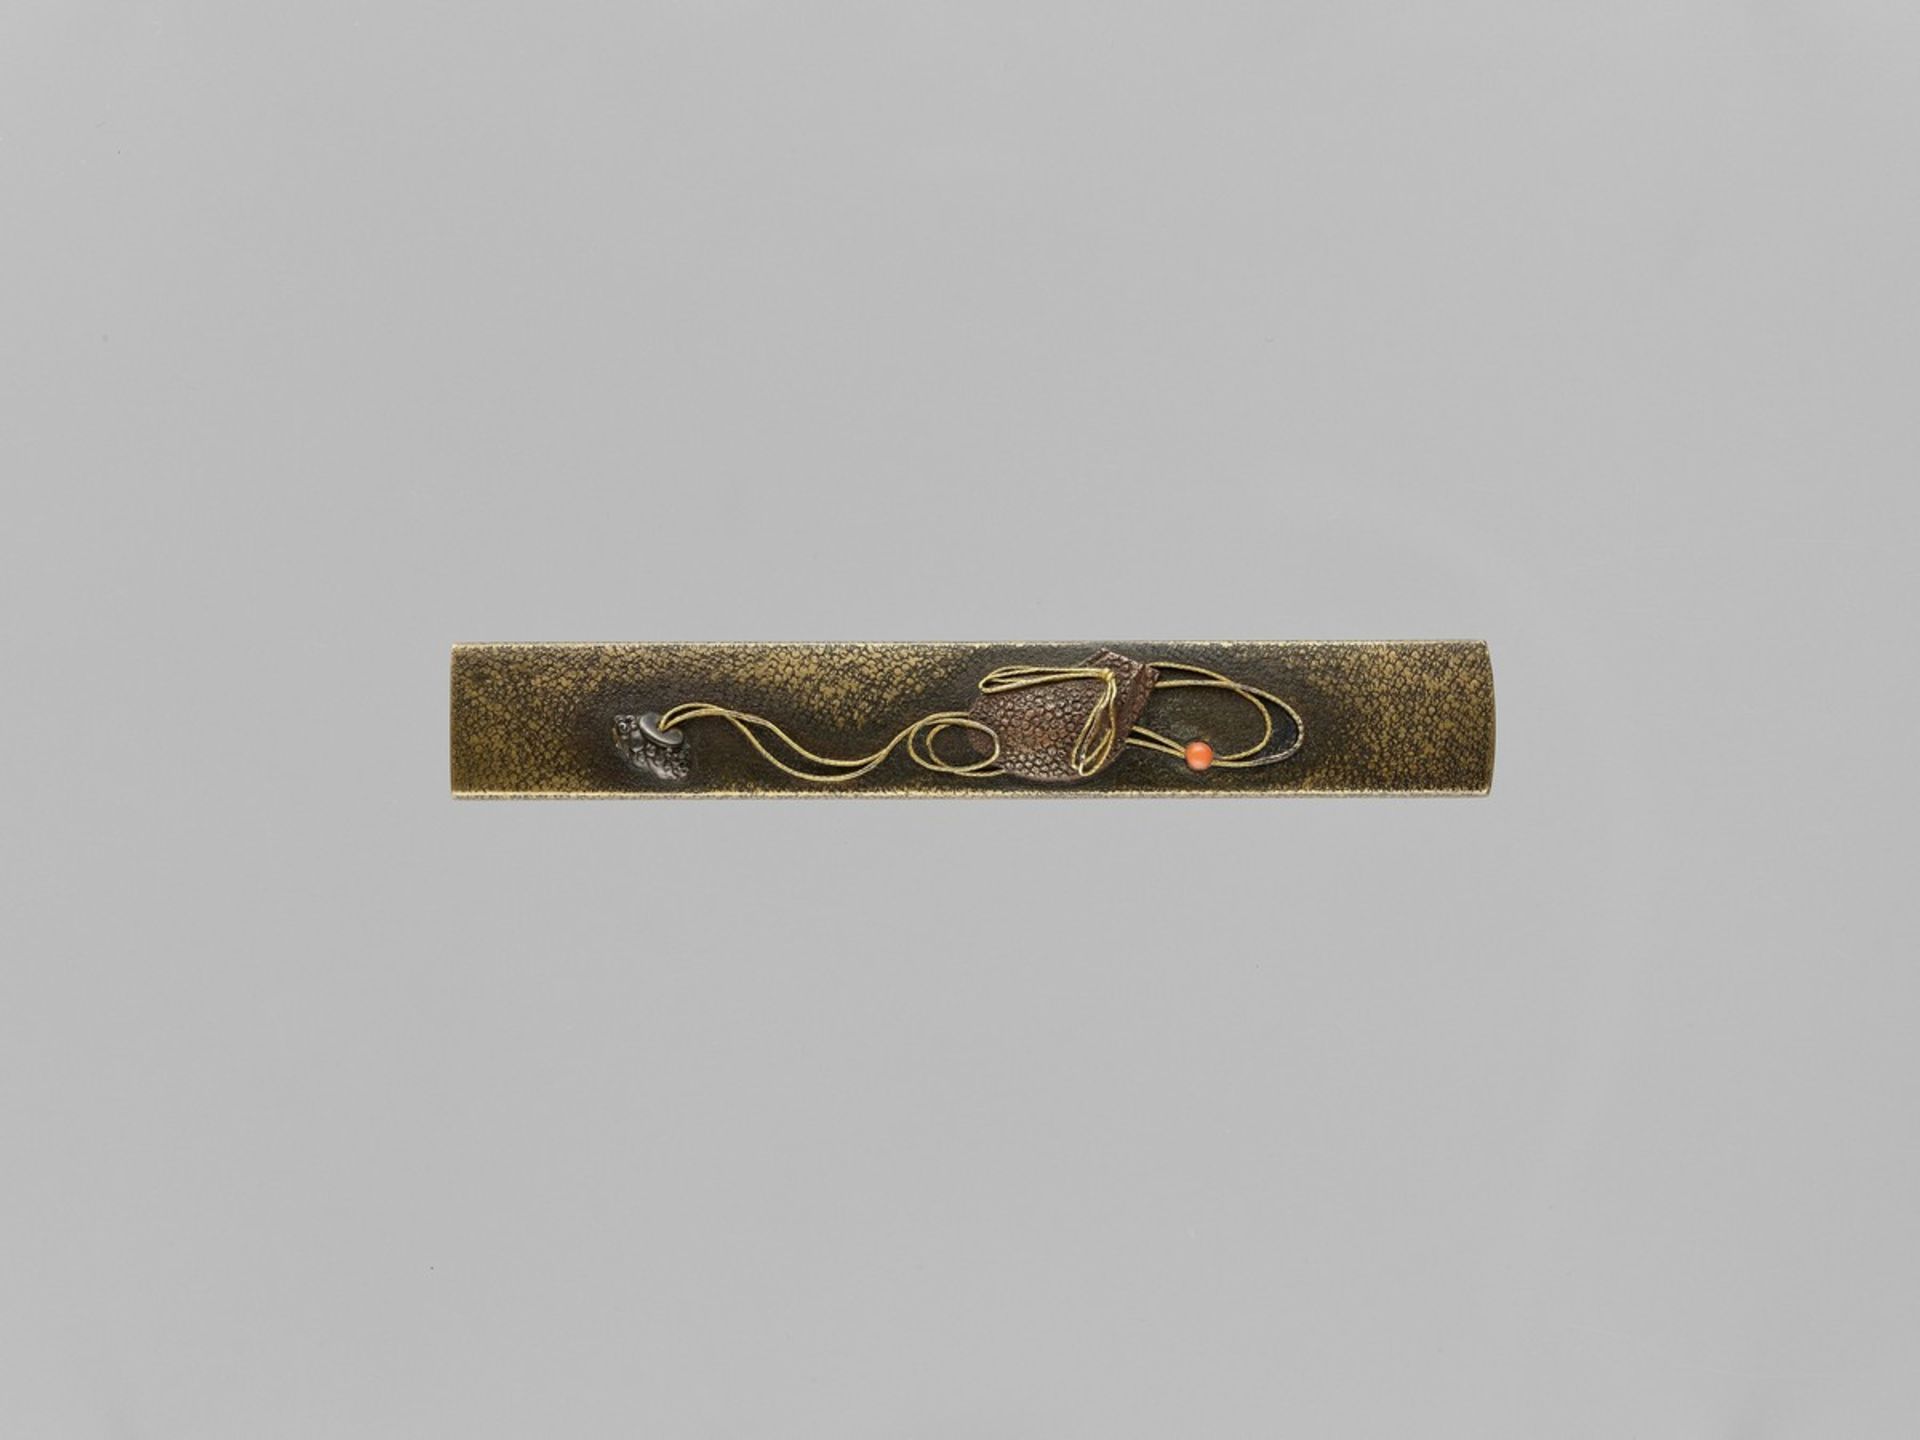 A RARE SENTOKU KOZUKA WITH SAGEMONO Japan, 19th centuryThe sentoku kozuka inlaid with a copper